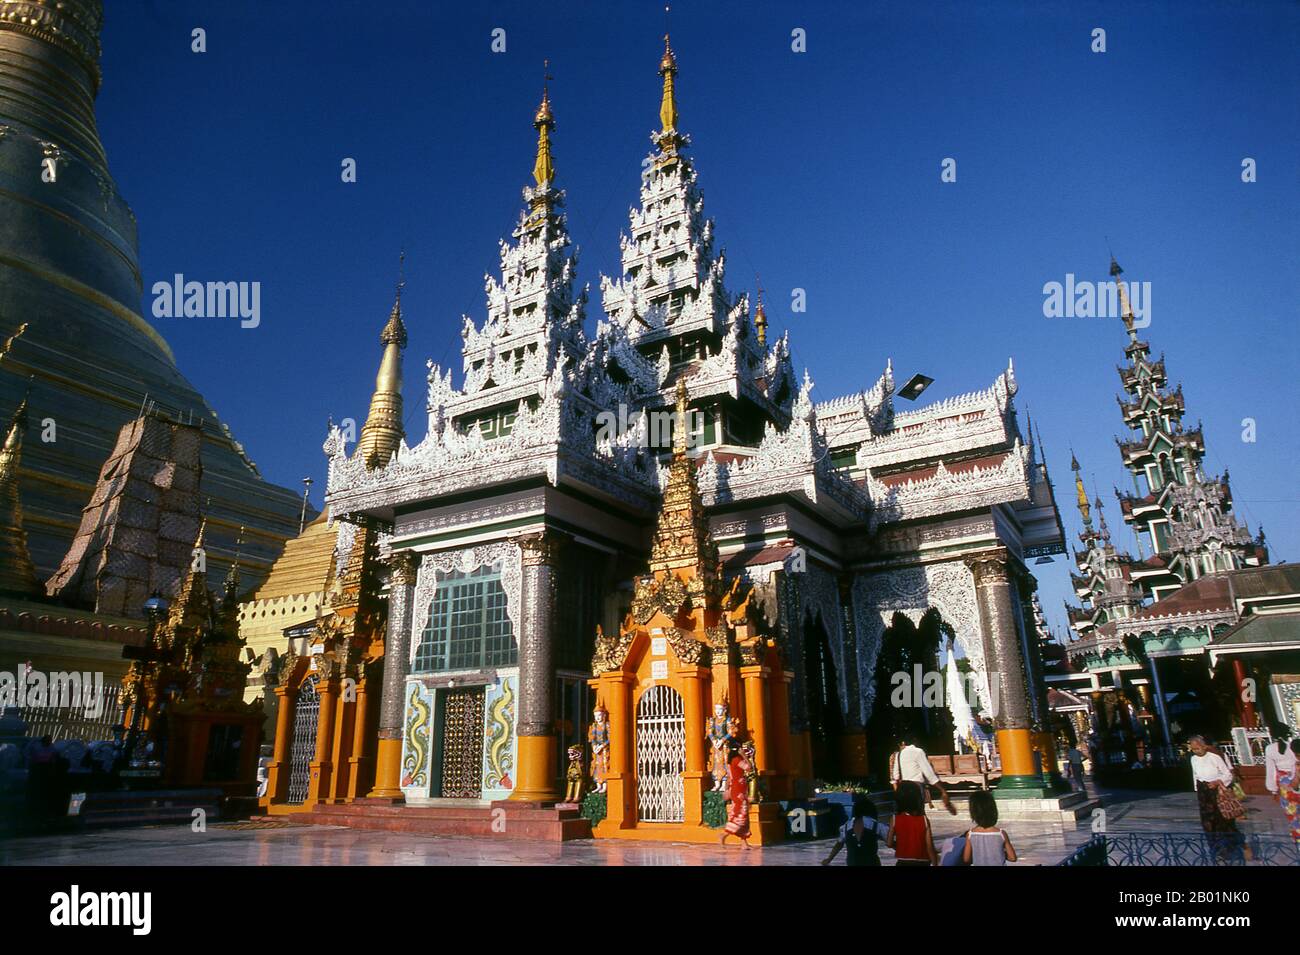 Birmania/Myanmar: The Temple of the Konagamana Buddha, Shwedagon Pagoda, Yangon (Rangoon). Lo stupa dorato della Pagoda Shwedagon sorge quasi 100 m (330 piedi) sopra la sua posizione sulla collina di Singuttara ed è placcato con 8.688 lastre d'oro massiccio. Questo stupa centrale è circondato da più di 100 altri edifici, tra cui stupa e padiglioni più piccoli. La pagoda era già ben consolidata quando Bagan dominò la Birmania nell'XI secolo. Si ritiene che la regina Shinsawbu, che governò nel XV secolo, abbia dato alla pagoda la sua forma attuale. Costruì anche le terrazze e le mura intorno allo stupa. Foto Stock